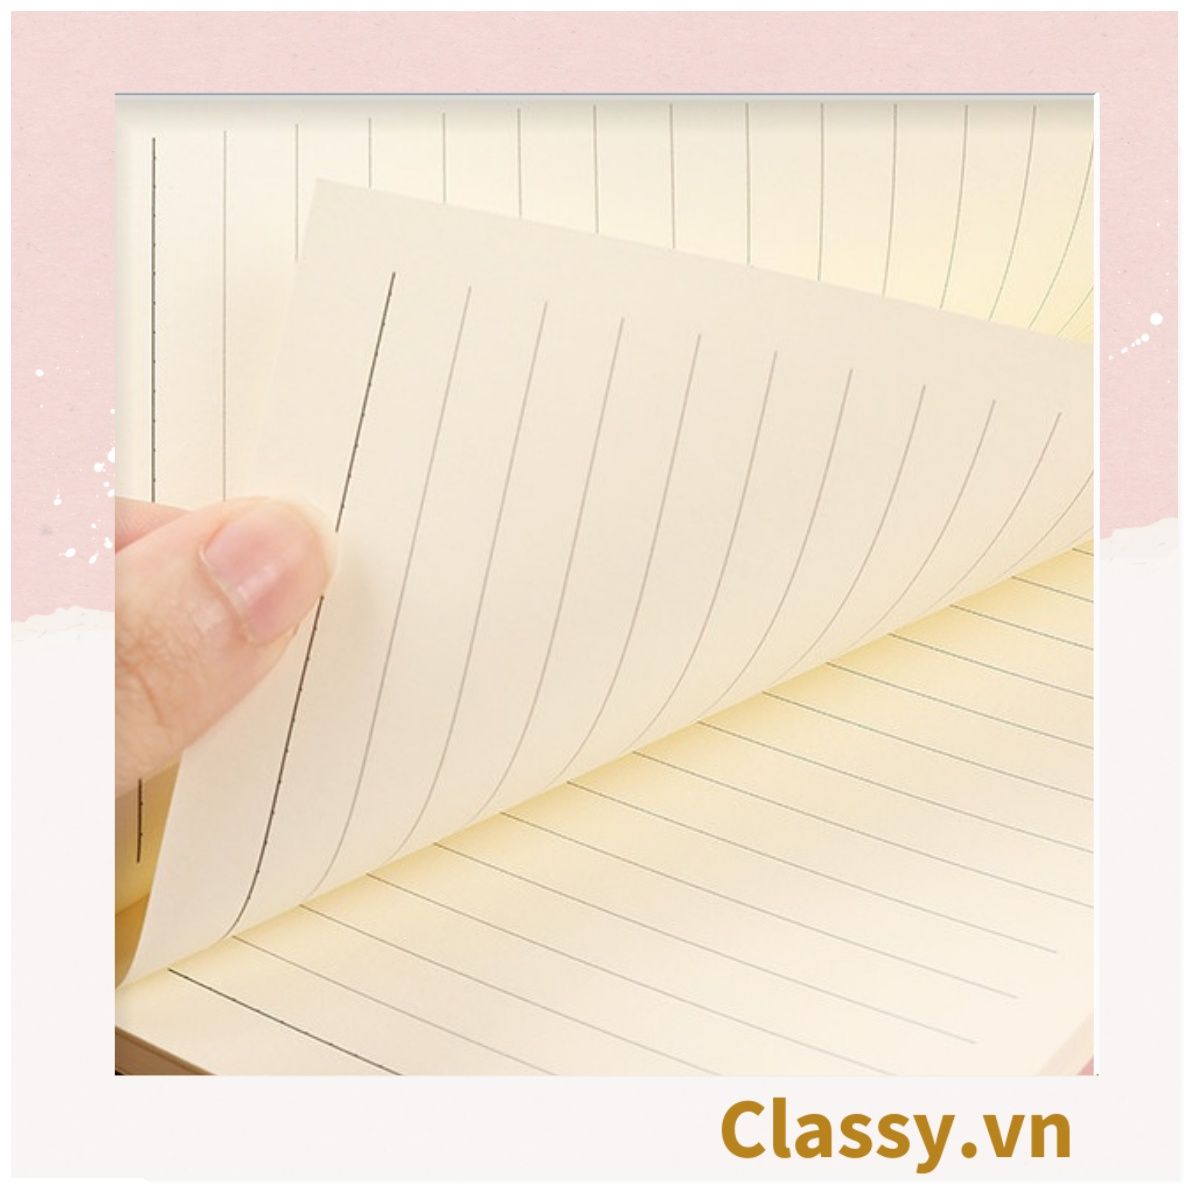  Sổ tay bìa da bìa còng ghi chú giấy màu trơn pastel, giấy kẻ ngang 200 trang có ngăn đựng thẻ, làm bút ký hoặc viết ghi chú, lên kế hoạch, PK1775 